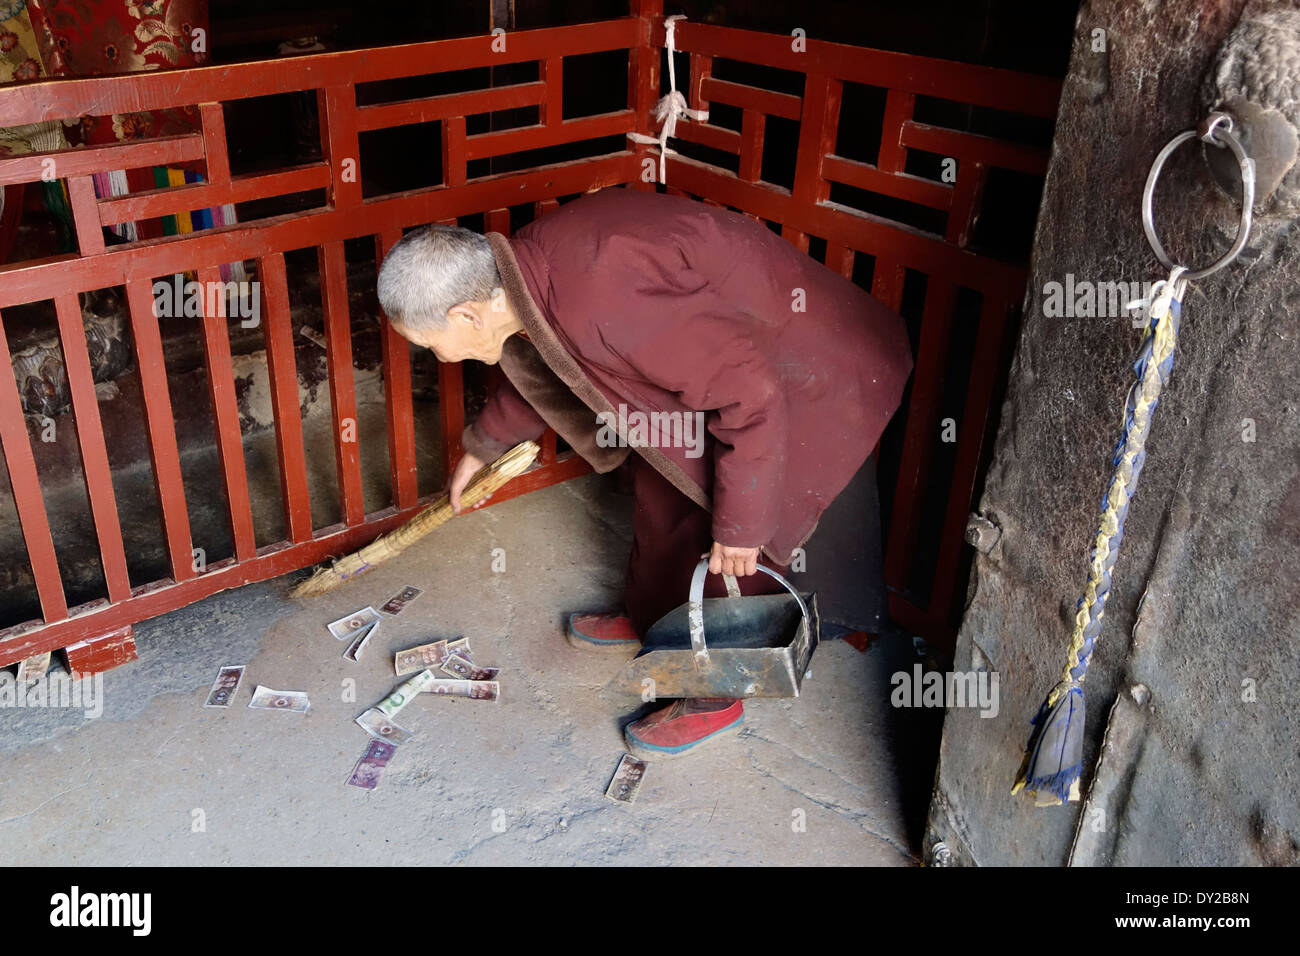 Mönch in Tibet sammeln Spenden, Candid Straßenfotografie, Leben der buddhistischen Hingabe, Geld im Kloster Stockfoto